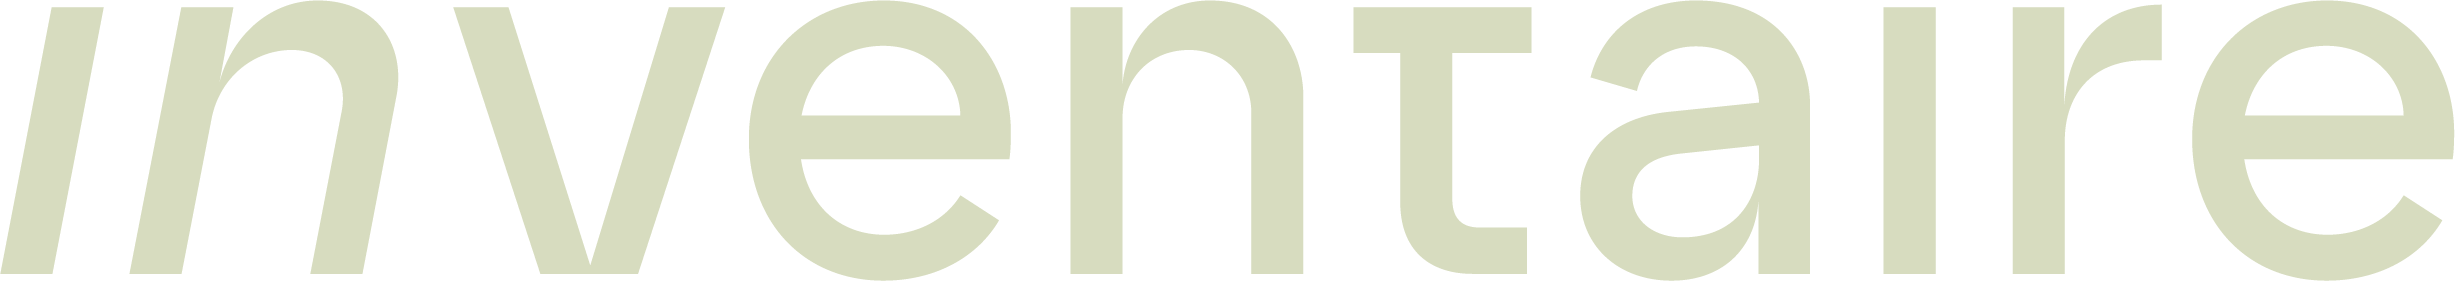 logo inventaire